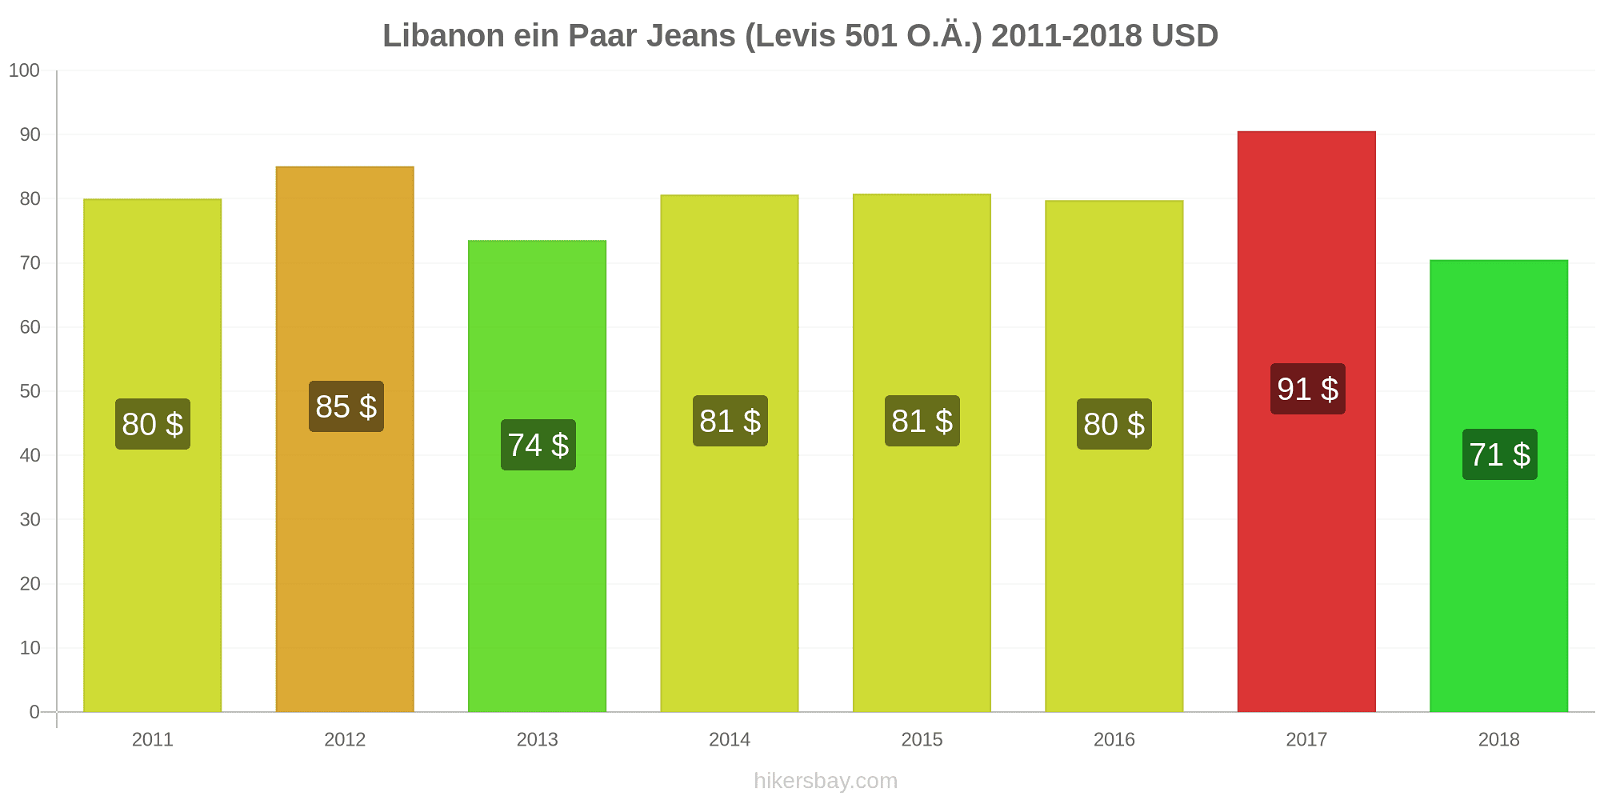 Libanon Preisänderungen 1 Paar Jeans (Levis 501 oder ähnliche) hikersbay.com